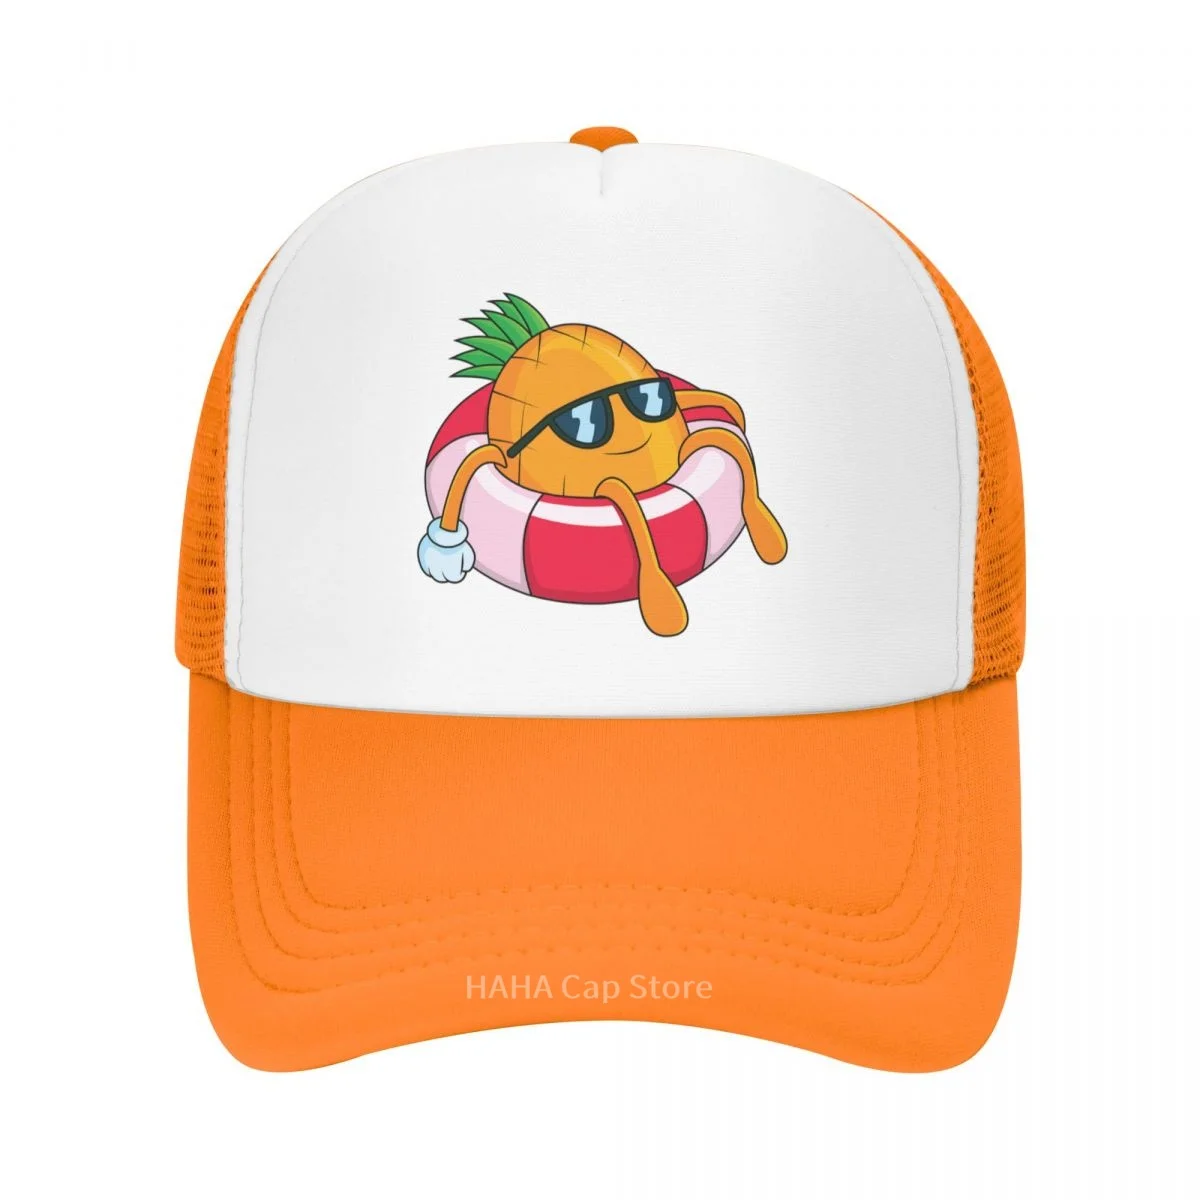 

Мультяшная тропическая шляпа с ананасами и фруктами, бейсболка, сетчатая кепка, шляпа из полиэстера на заказ, практичный подарок на день рождения